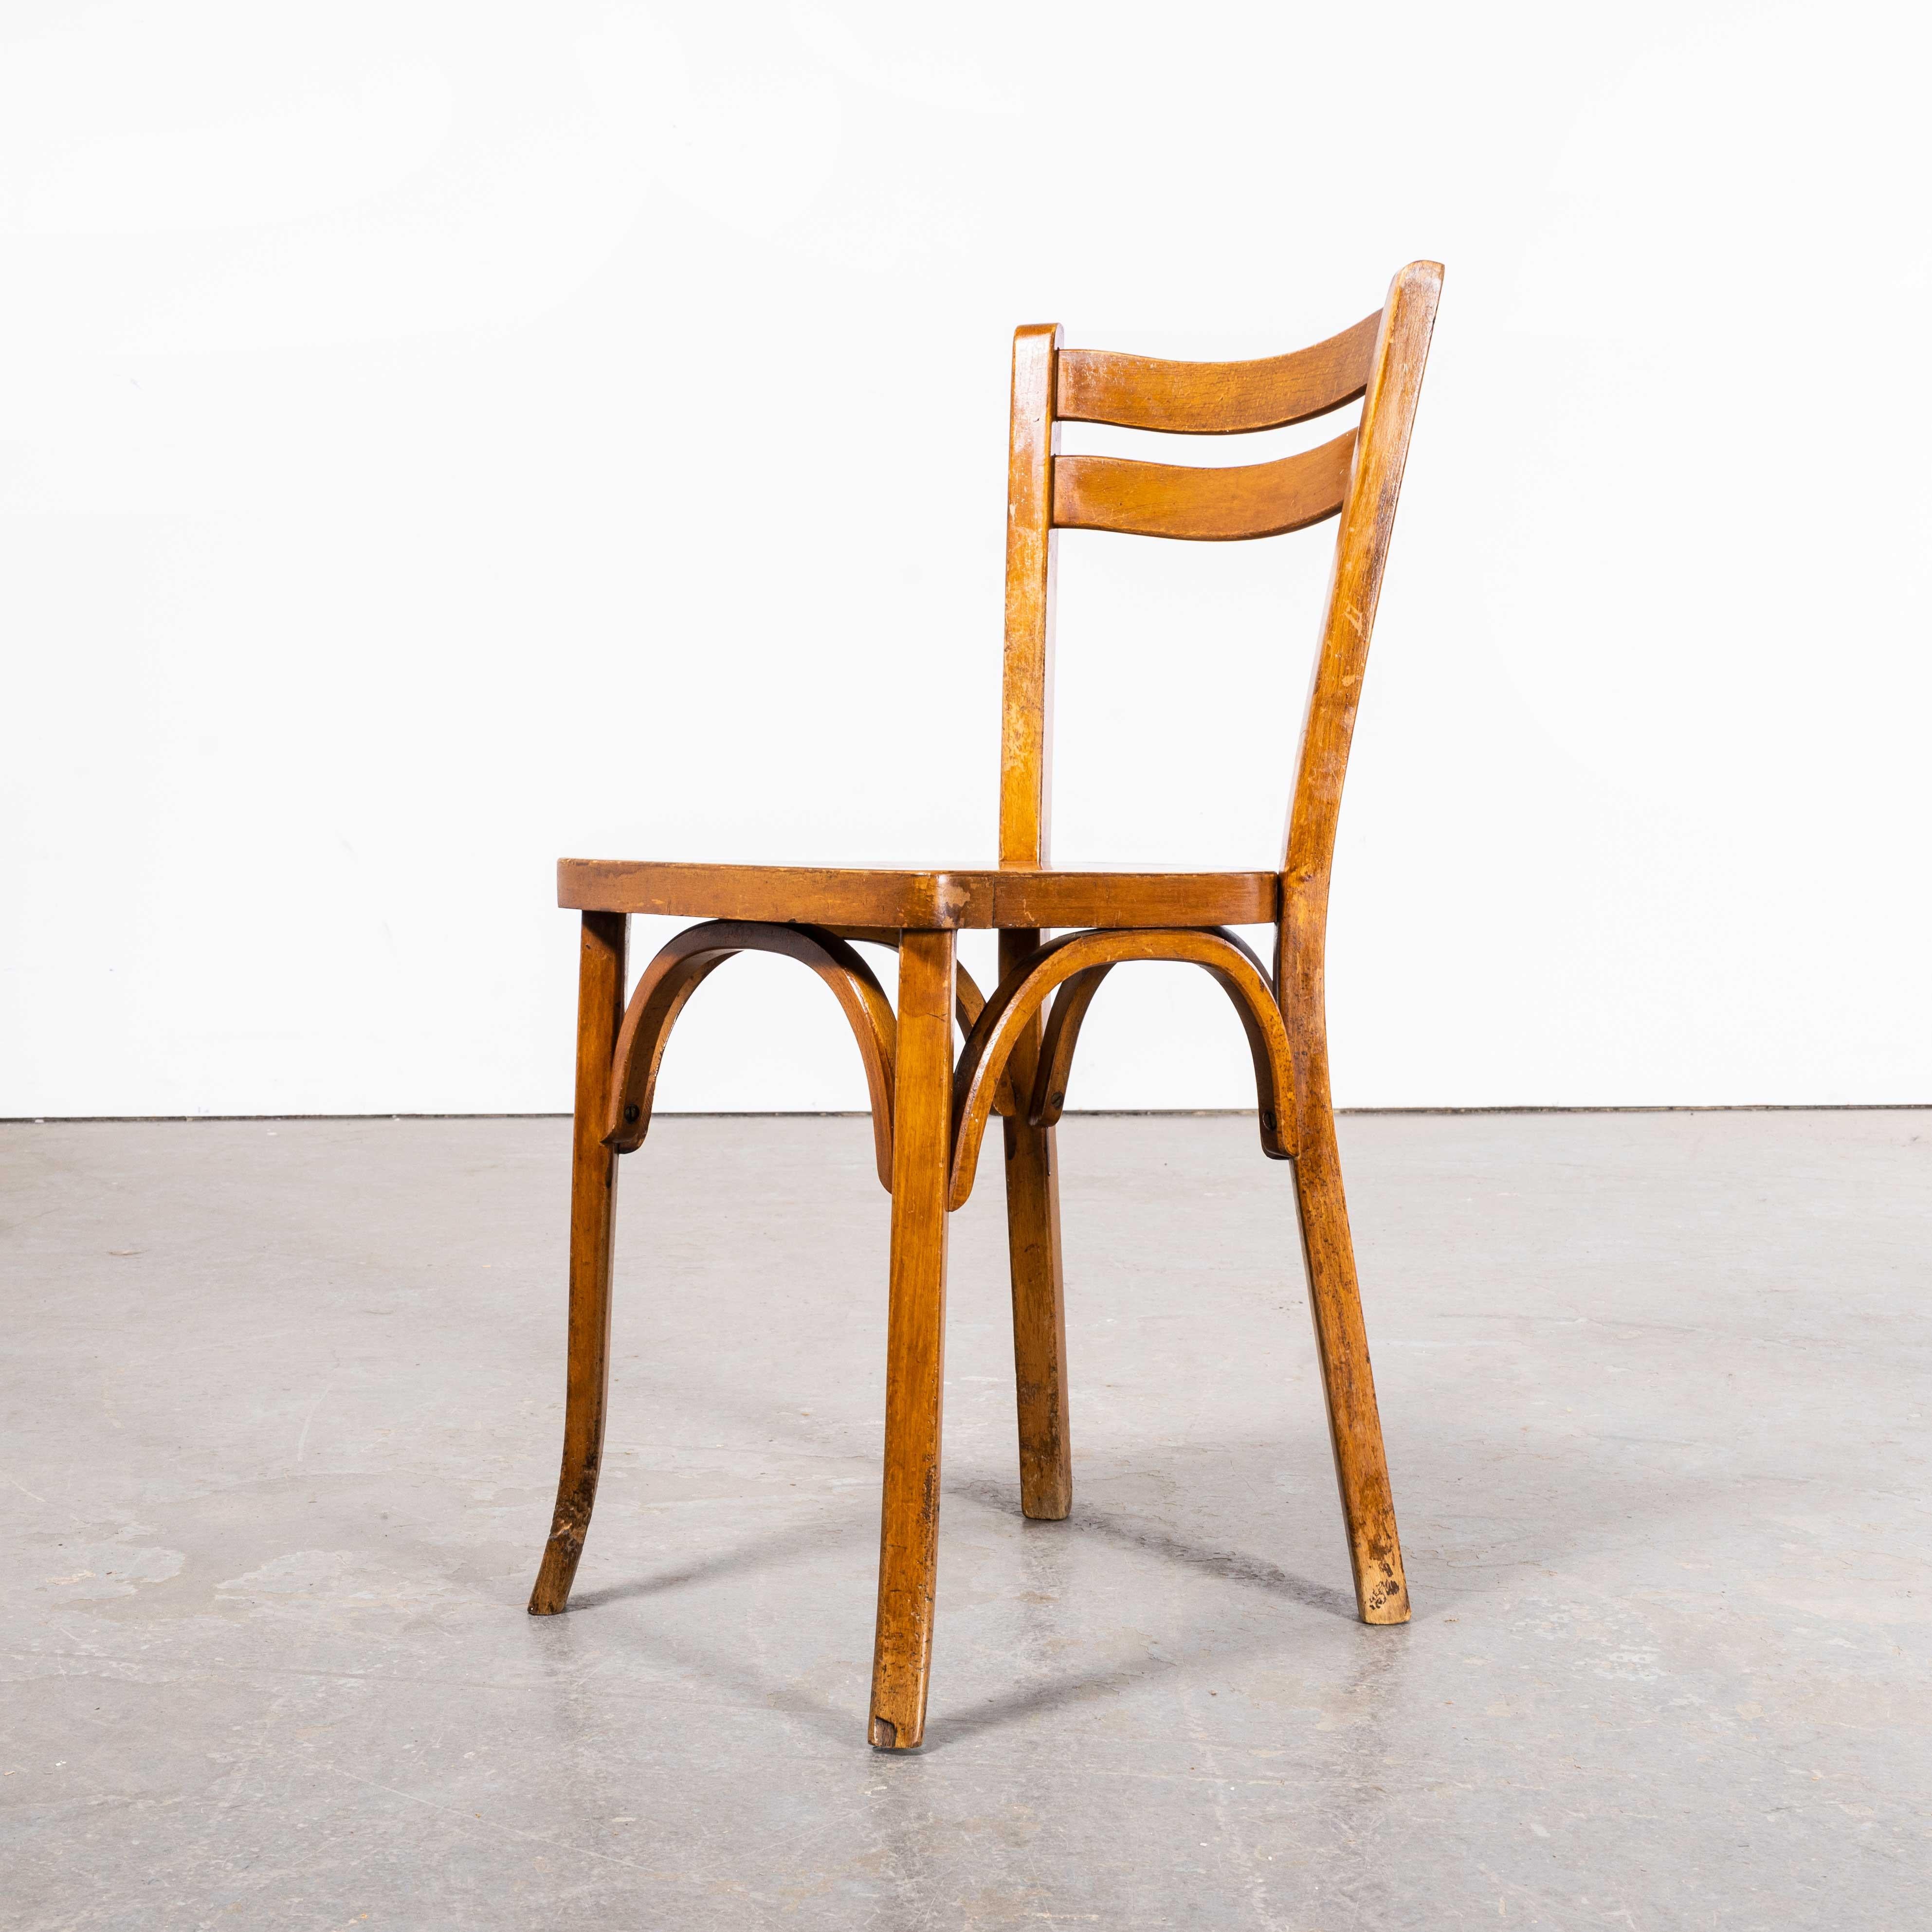 1950's French Baumann Wavy Back Bentwood Dining Chairs - Set von vier
1950's French Baumann Wavy Back Bentwood Dining Chairs - Set Of Four. Baumann ist ein etwas unauffälliger französischer Hersteller, der gerade beginnt, sich auf dem Markt